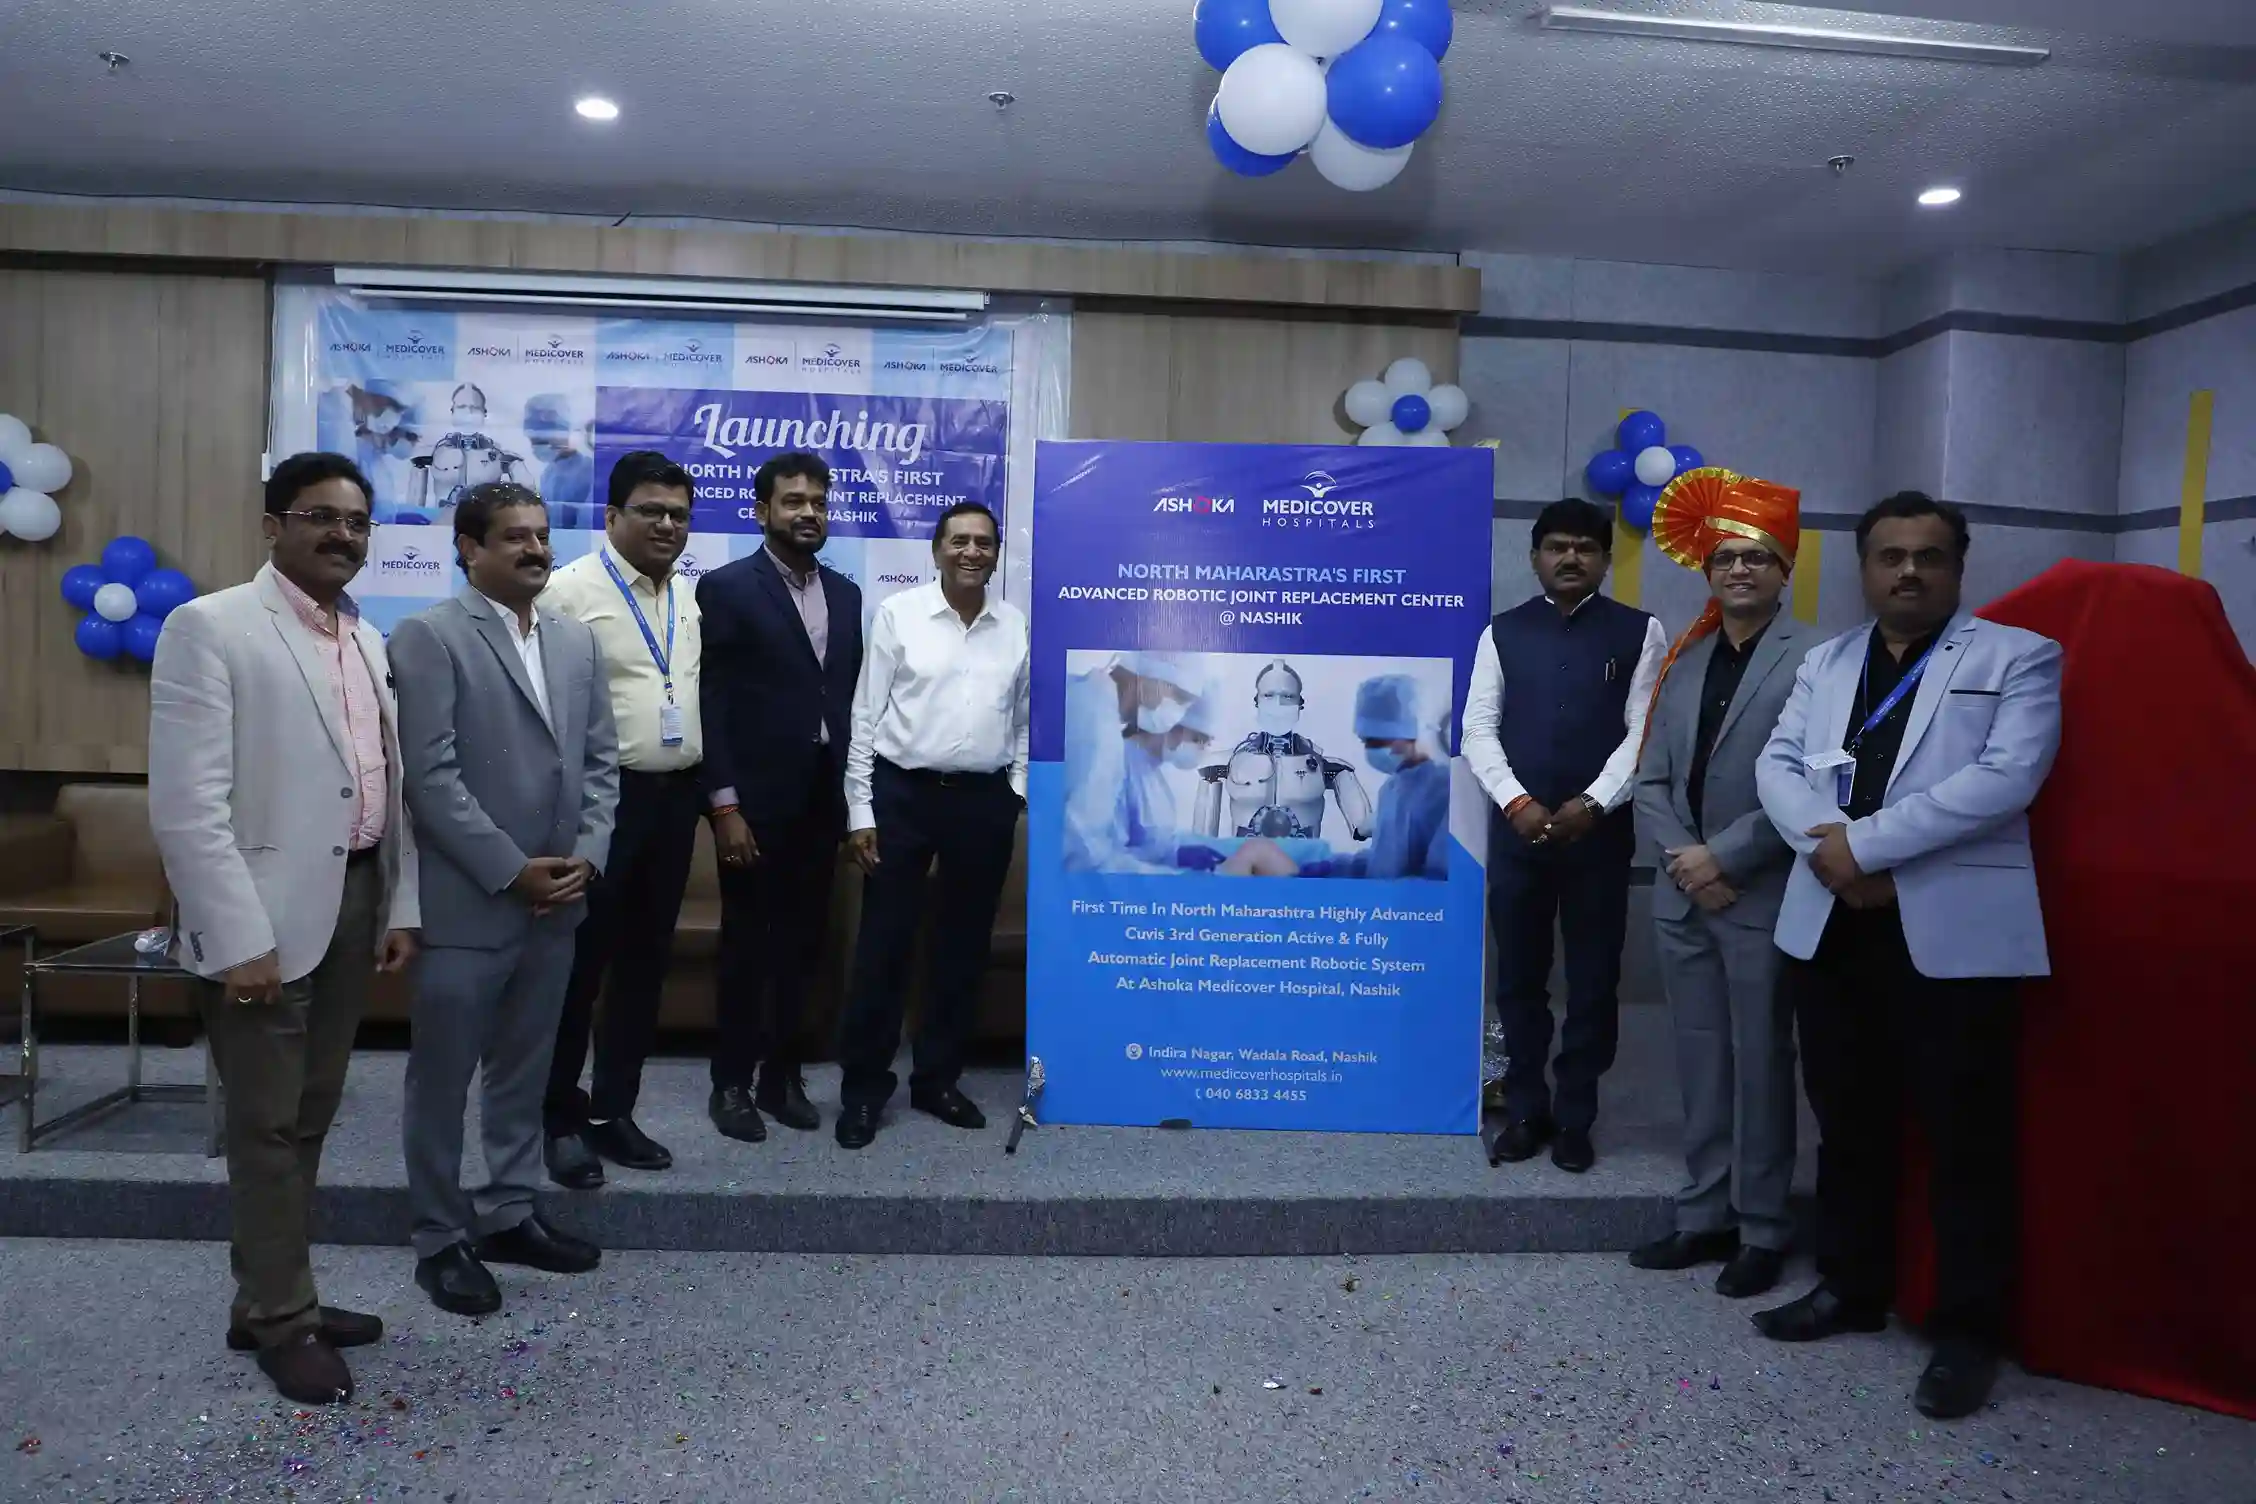 अशोका मेडिकवर हॉस्पिटल्स, नासिक ने उत्तरी महाराष्ट्र में पहली बार अत्यधिक उन्नत सीयूवीआईएस तीसरी पीढ़ी के सक्रिय और पूरी तरह से स्वचालित ज्वाइंट रिप्लेसमेंट रोबोटिक सिस्टम लॉन्च किया।